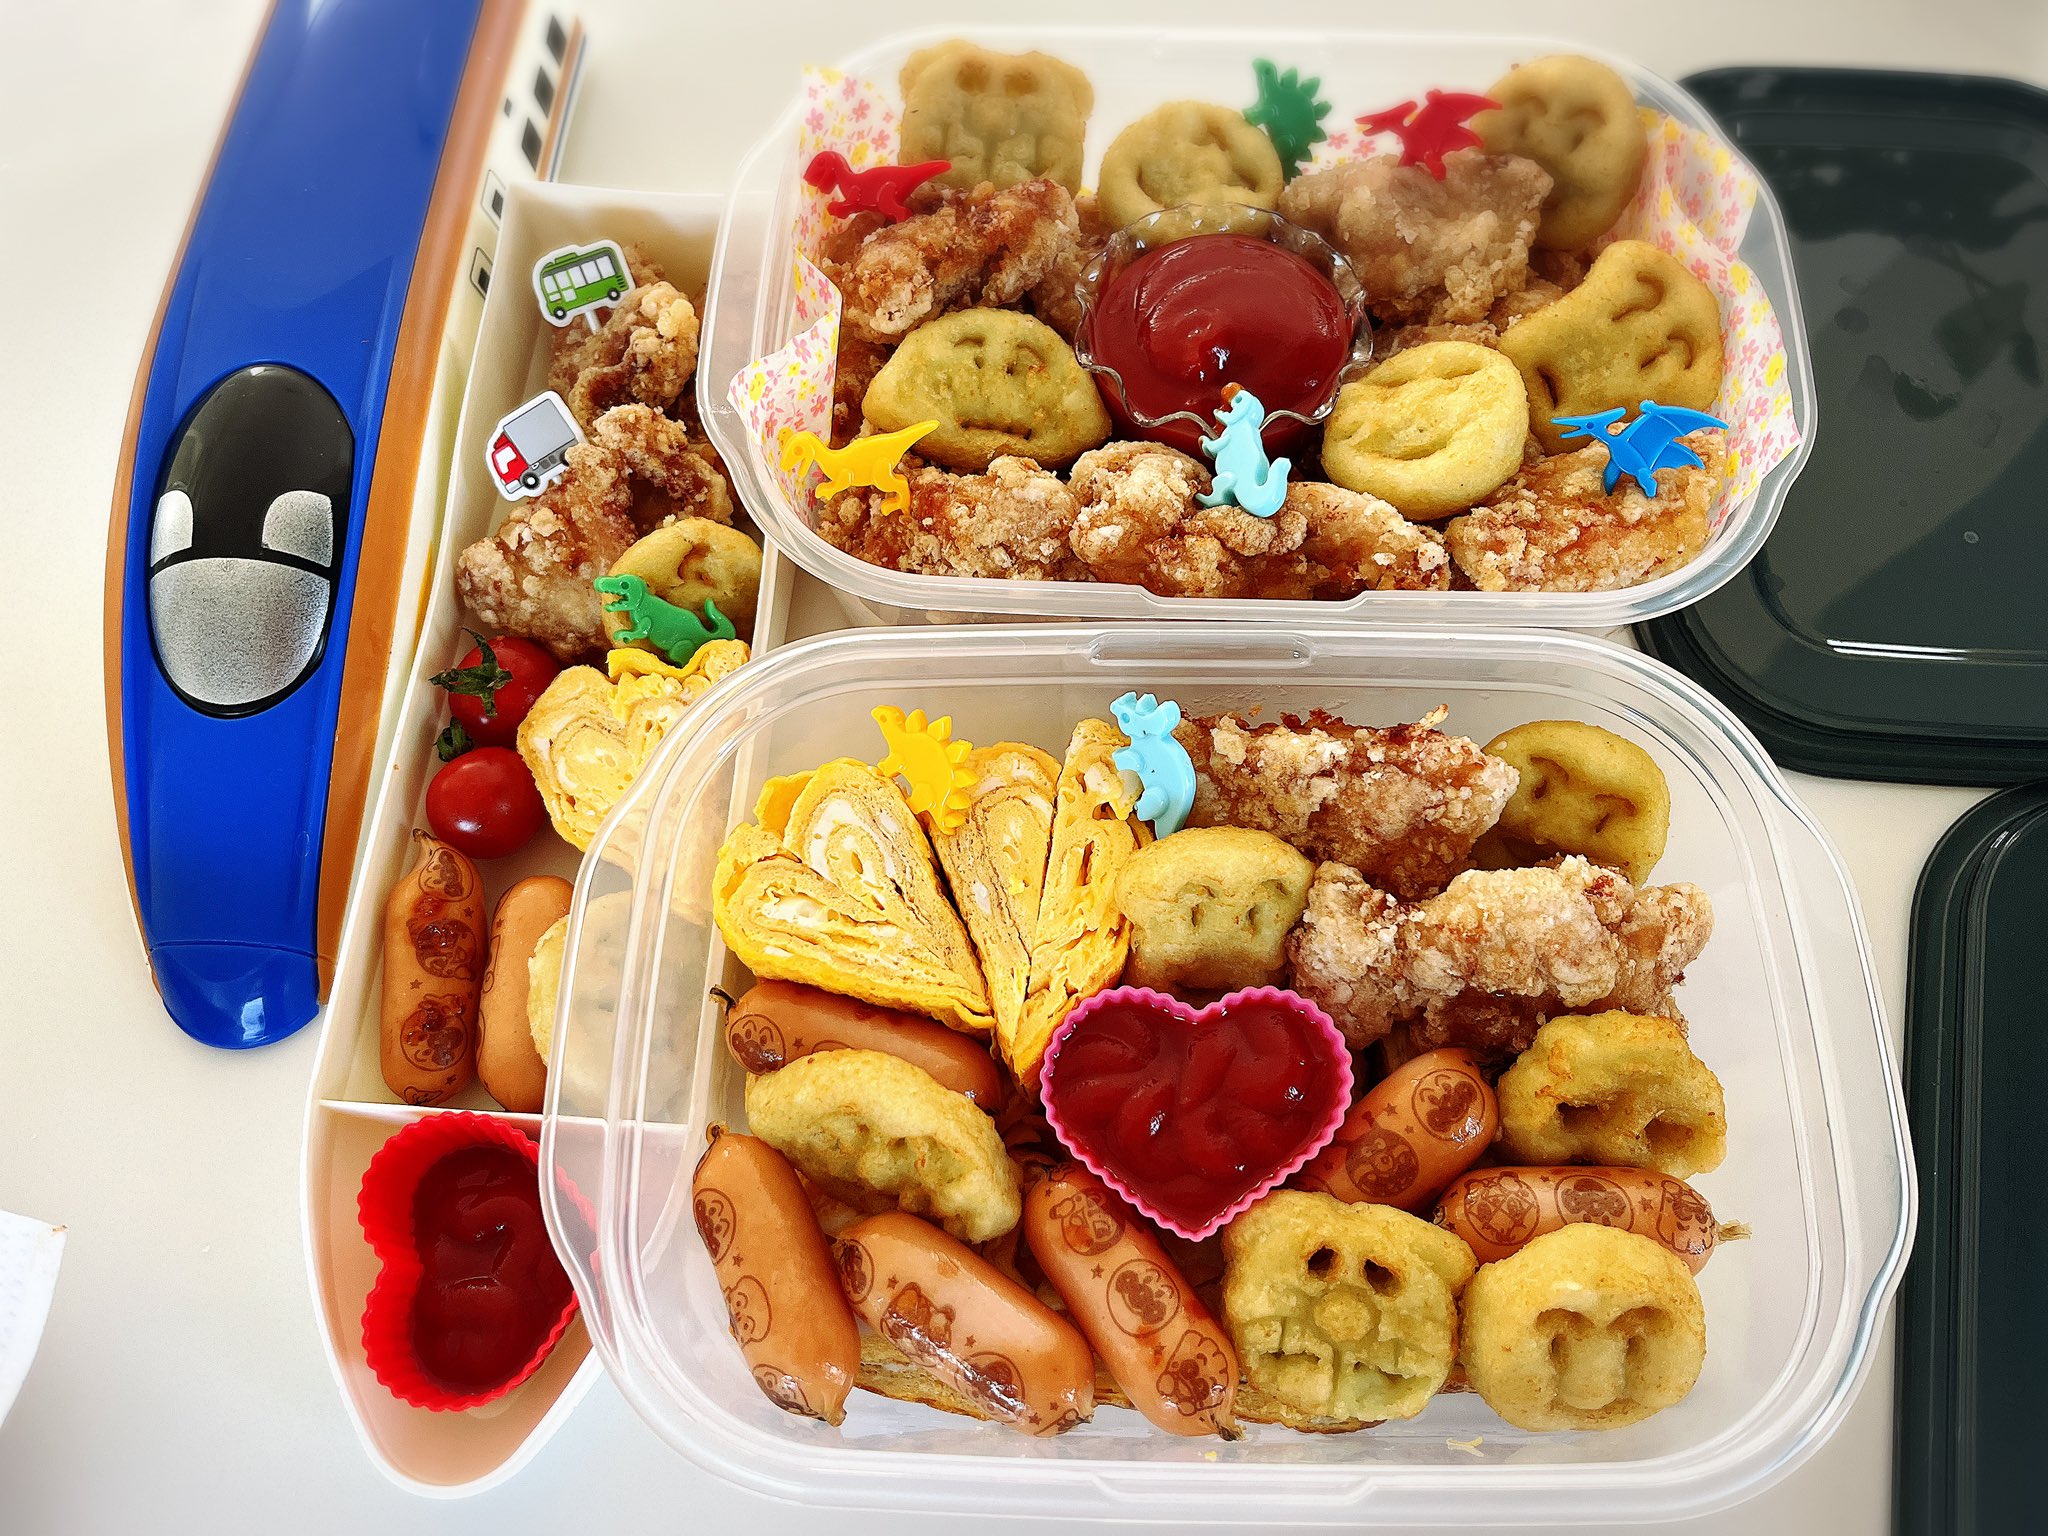 やよい 川崎で週末自炊 かわいいお弁当作れないからアンパンマンとピックに助けられてる 昨日はピクニックでした ピクニック お弁当 アンパンマン 外飲み 乾杯 T Co Rmlwh3jqsv Twitter